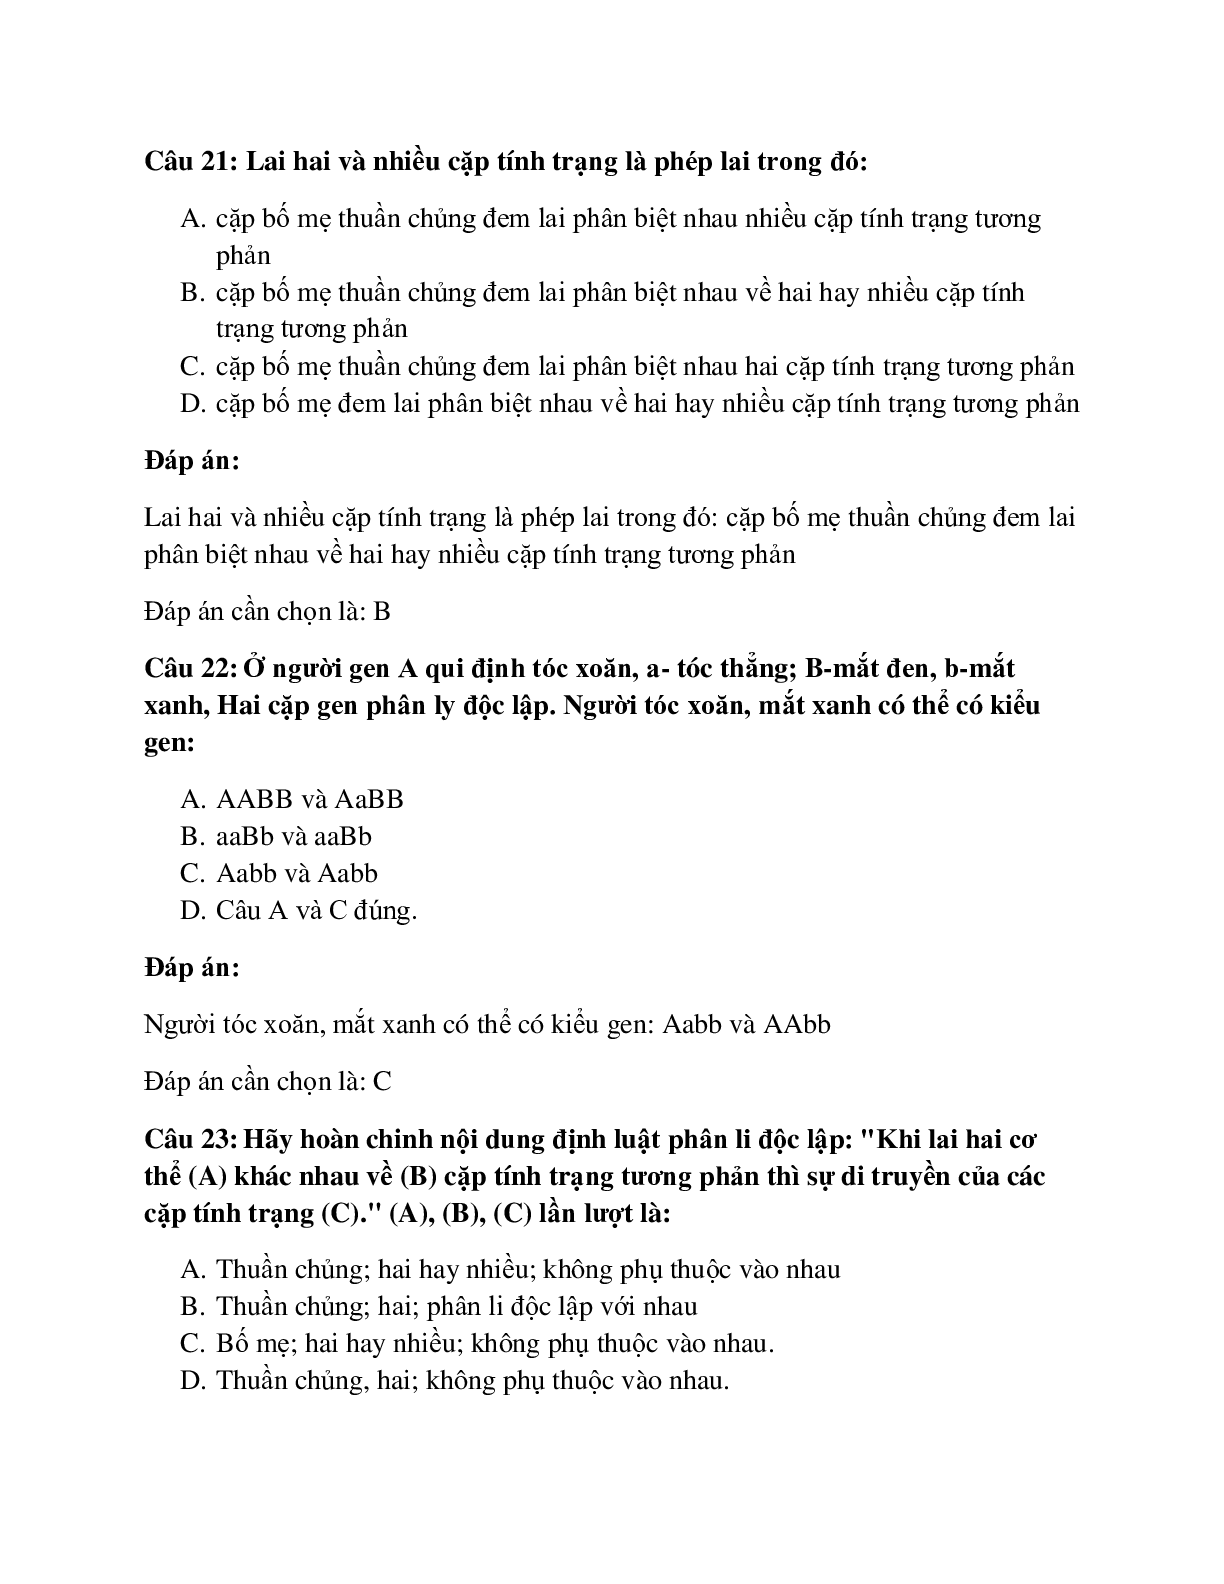 31 câu Trắc nghiệm Sinh học 9 Bài 4 có đáp án 2023: Lai hai cặp tính trạng (trang 8)